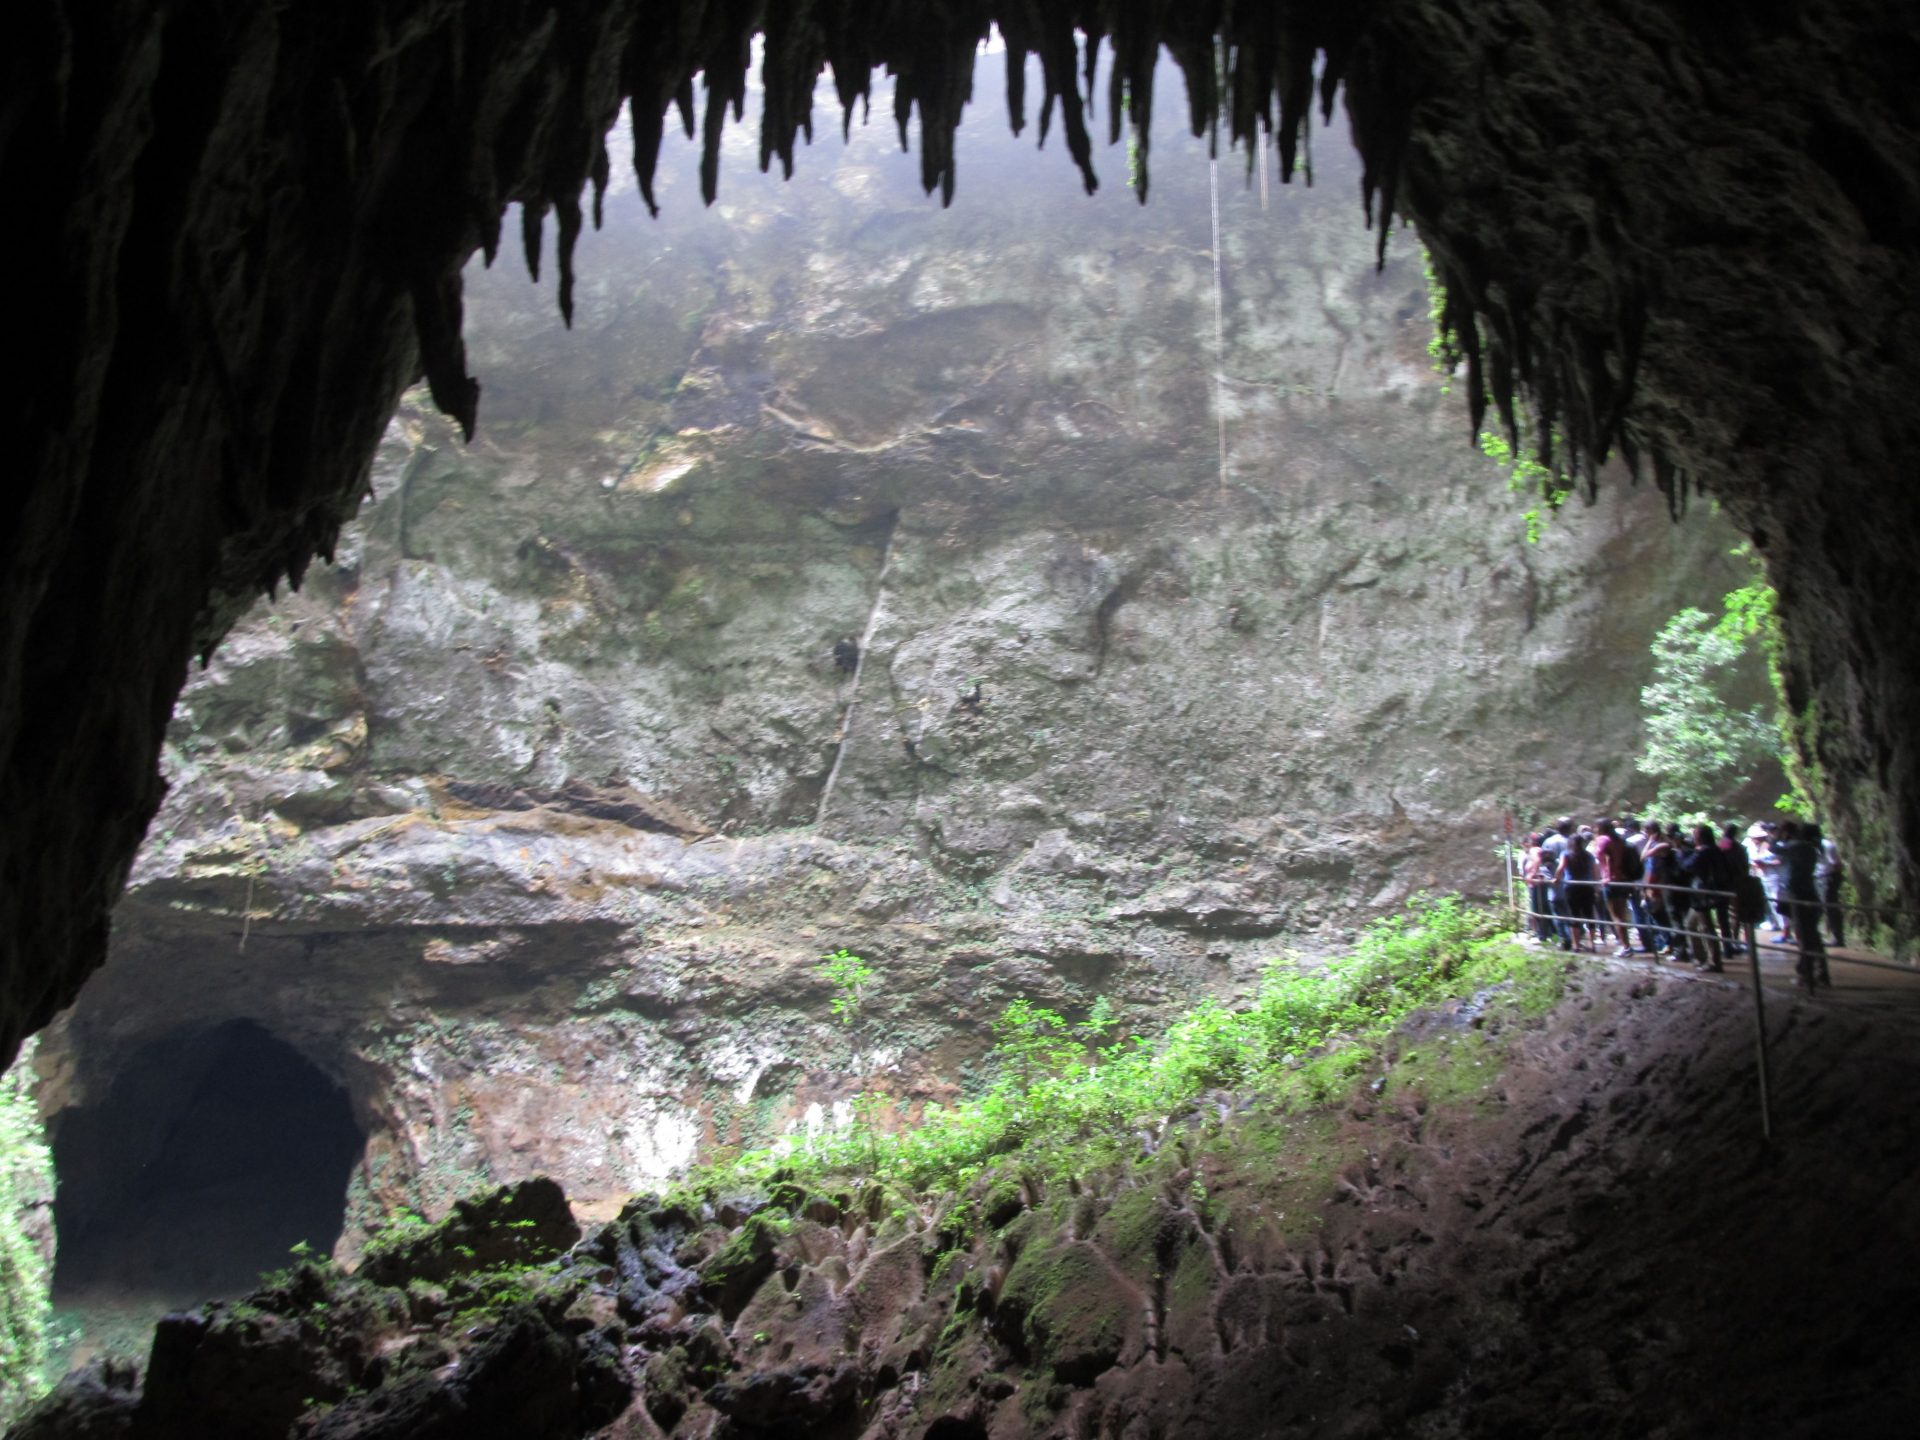 Imagen noticia Ley de las cavernas para conservar el patrimonio natural